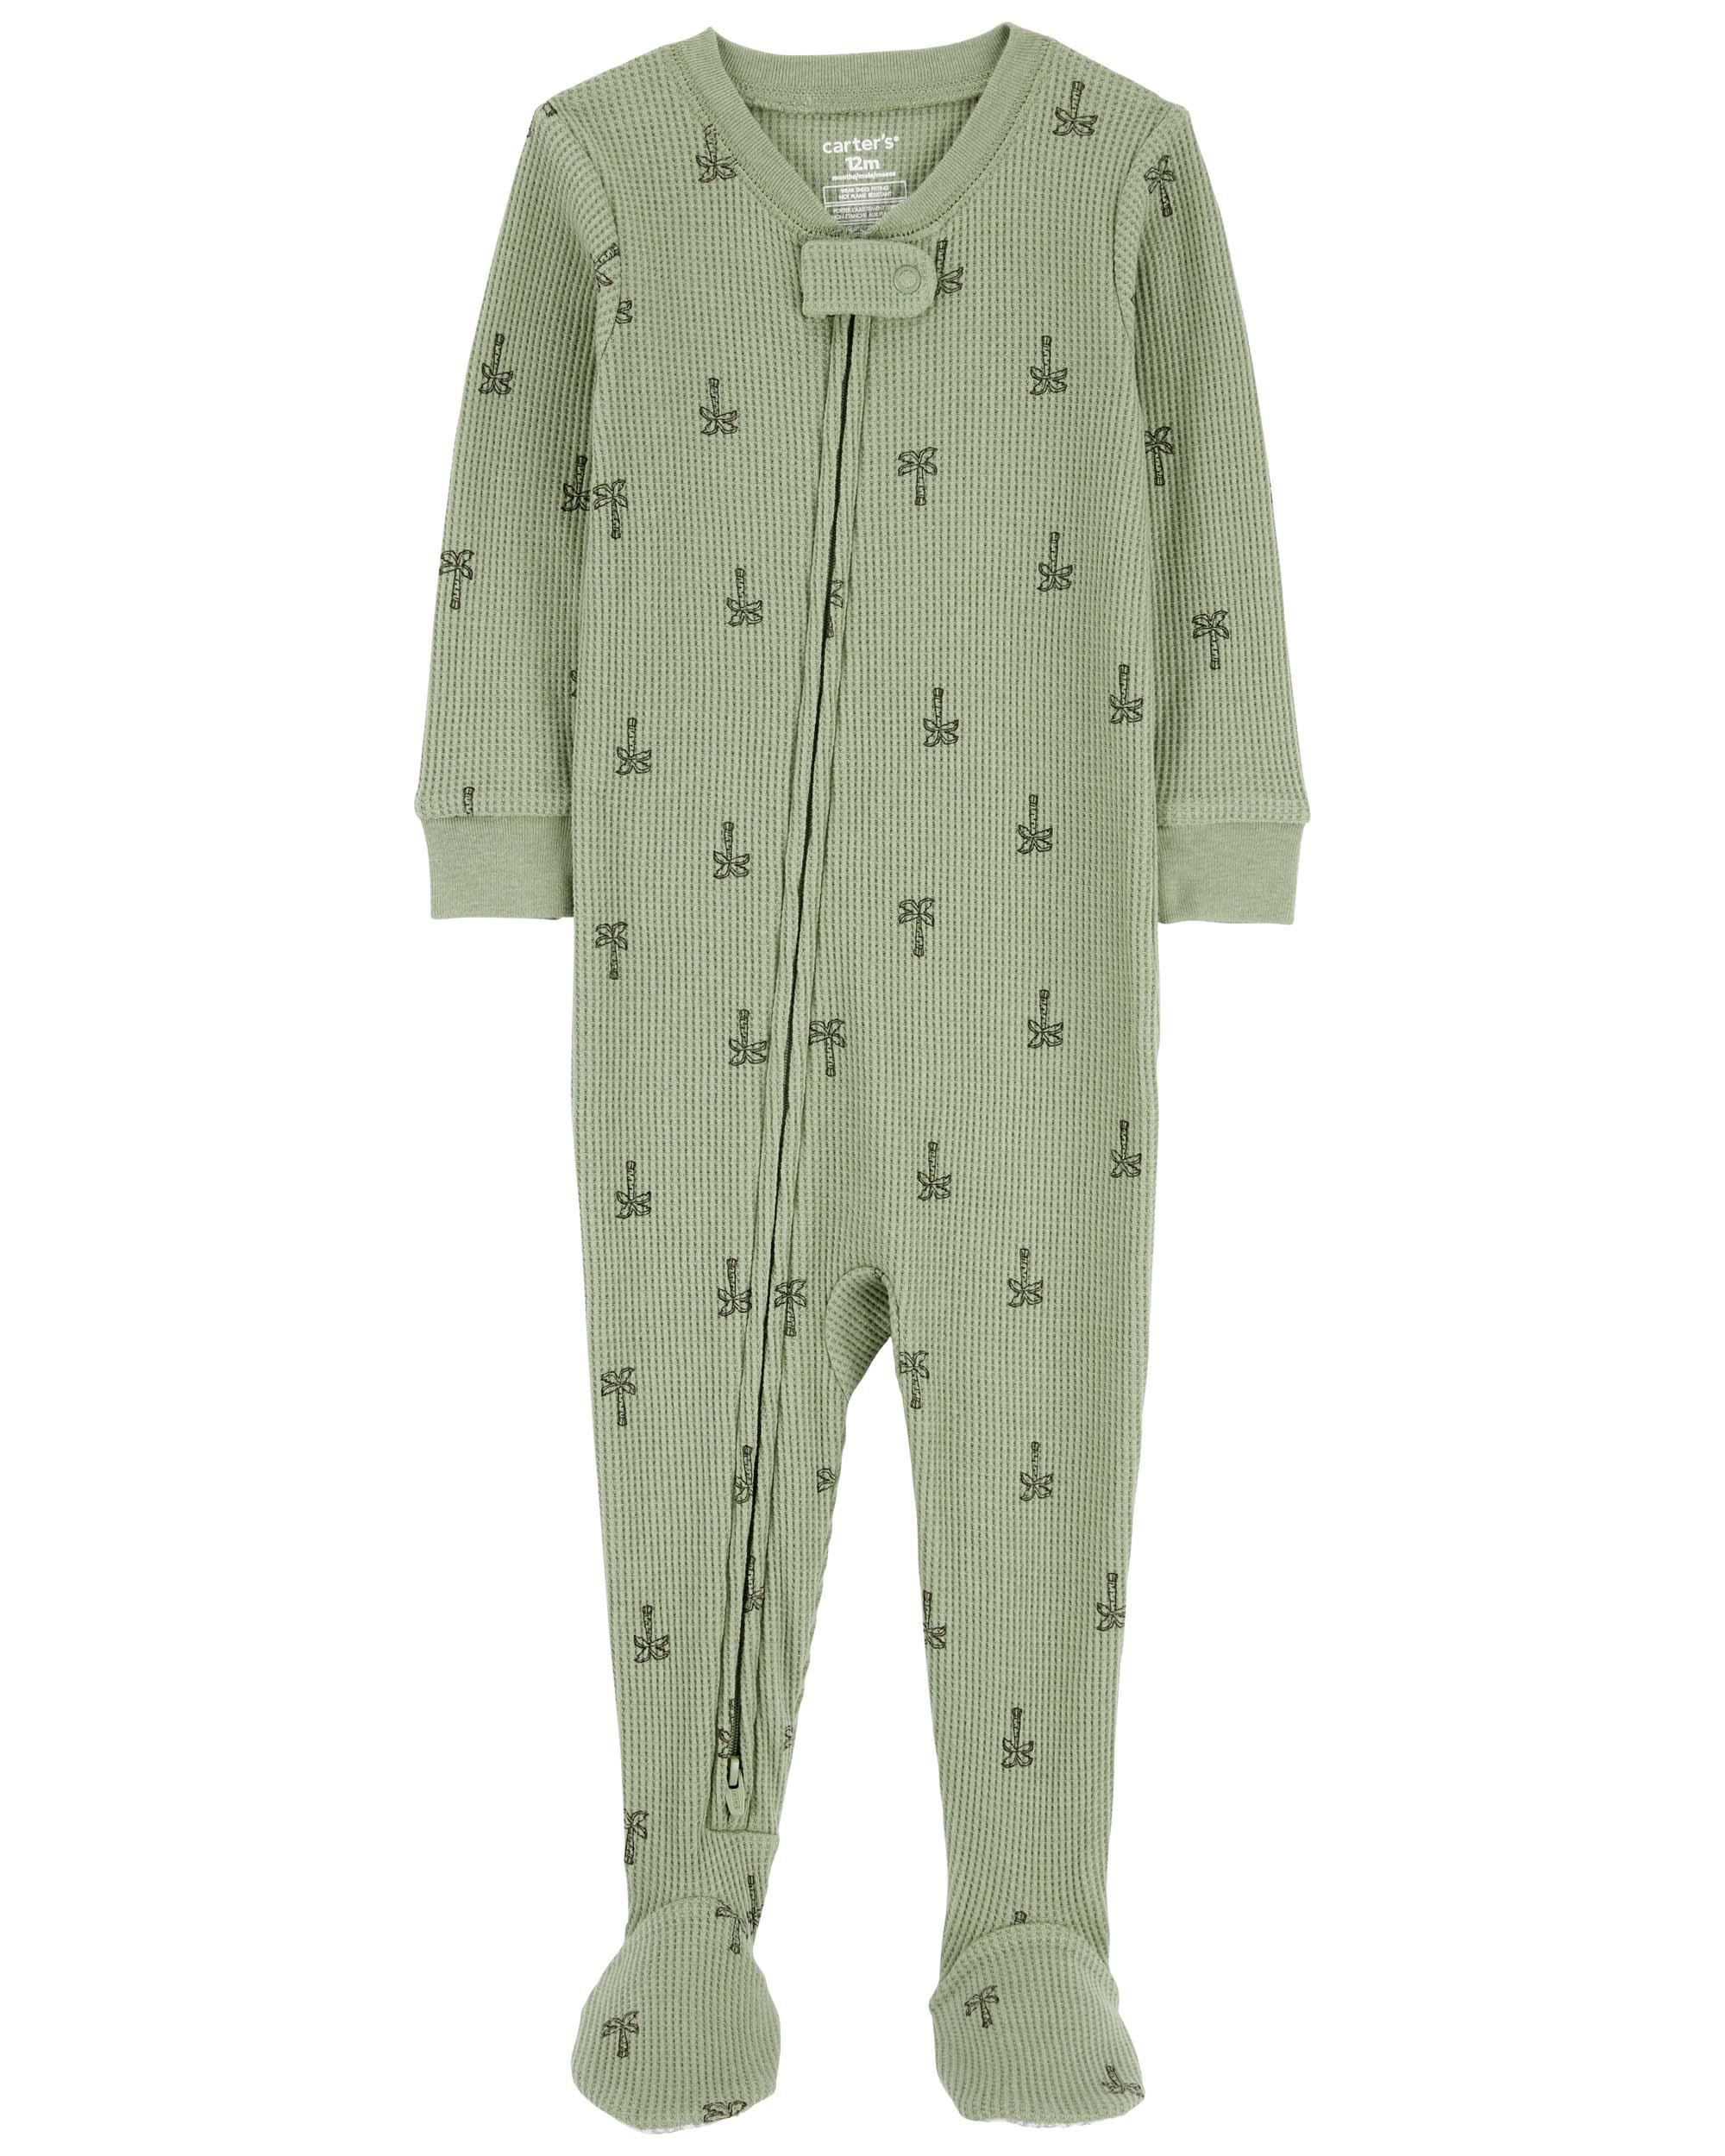 Toddler 1-Piece Palm Tree Thermal Footie Pajamas